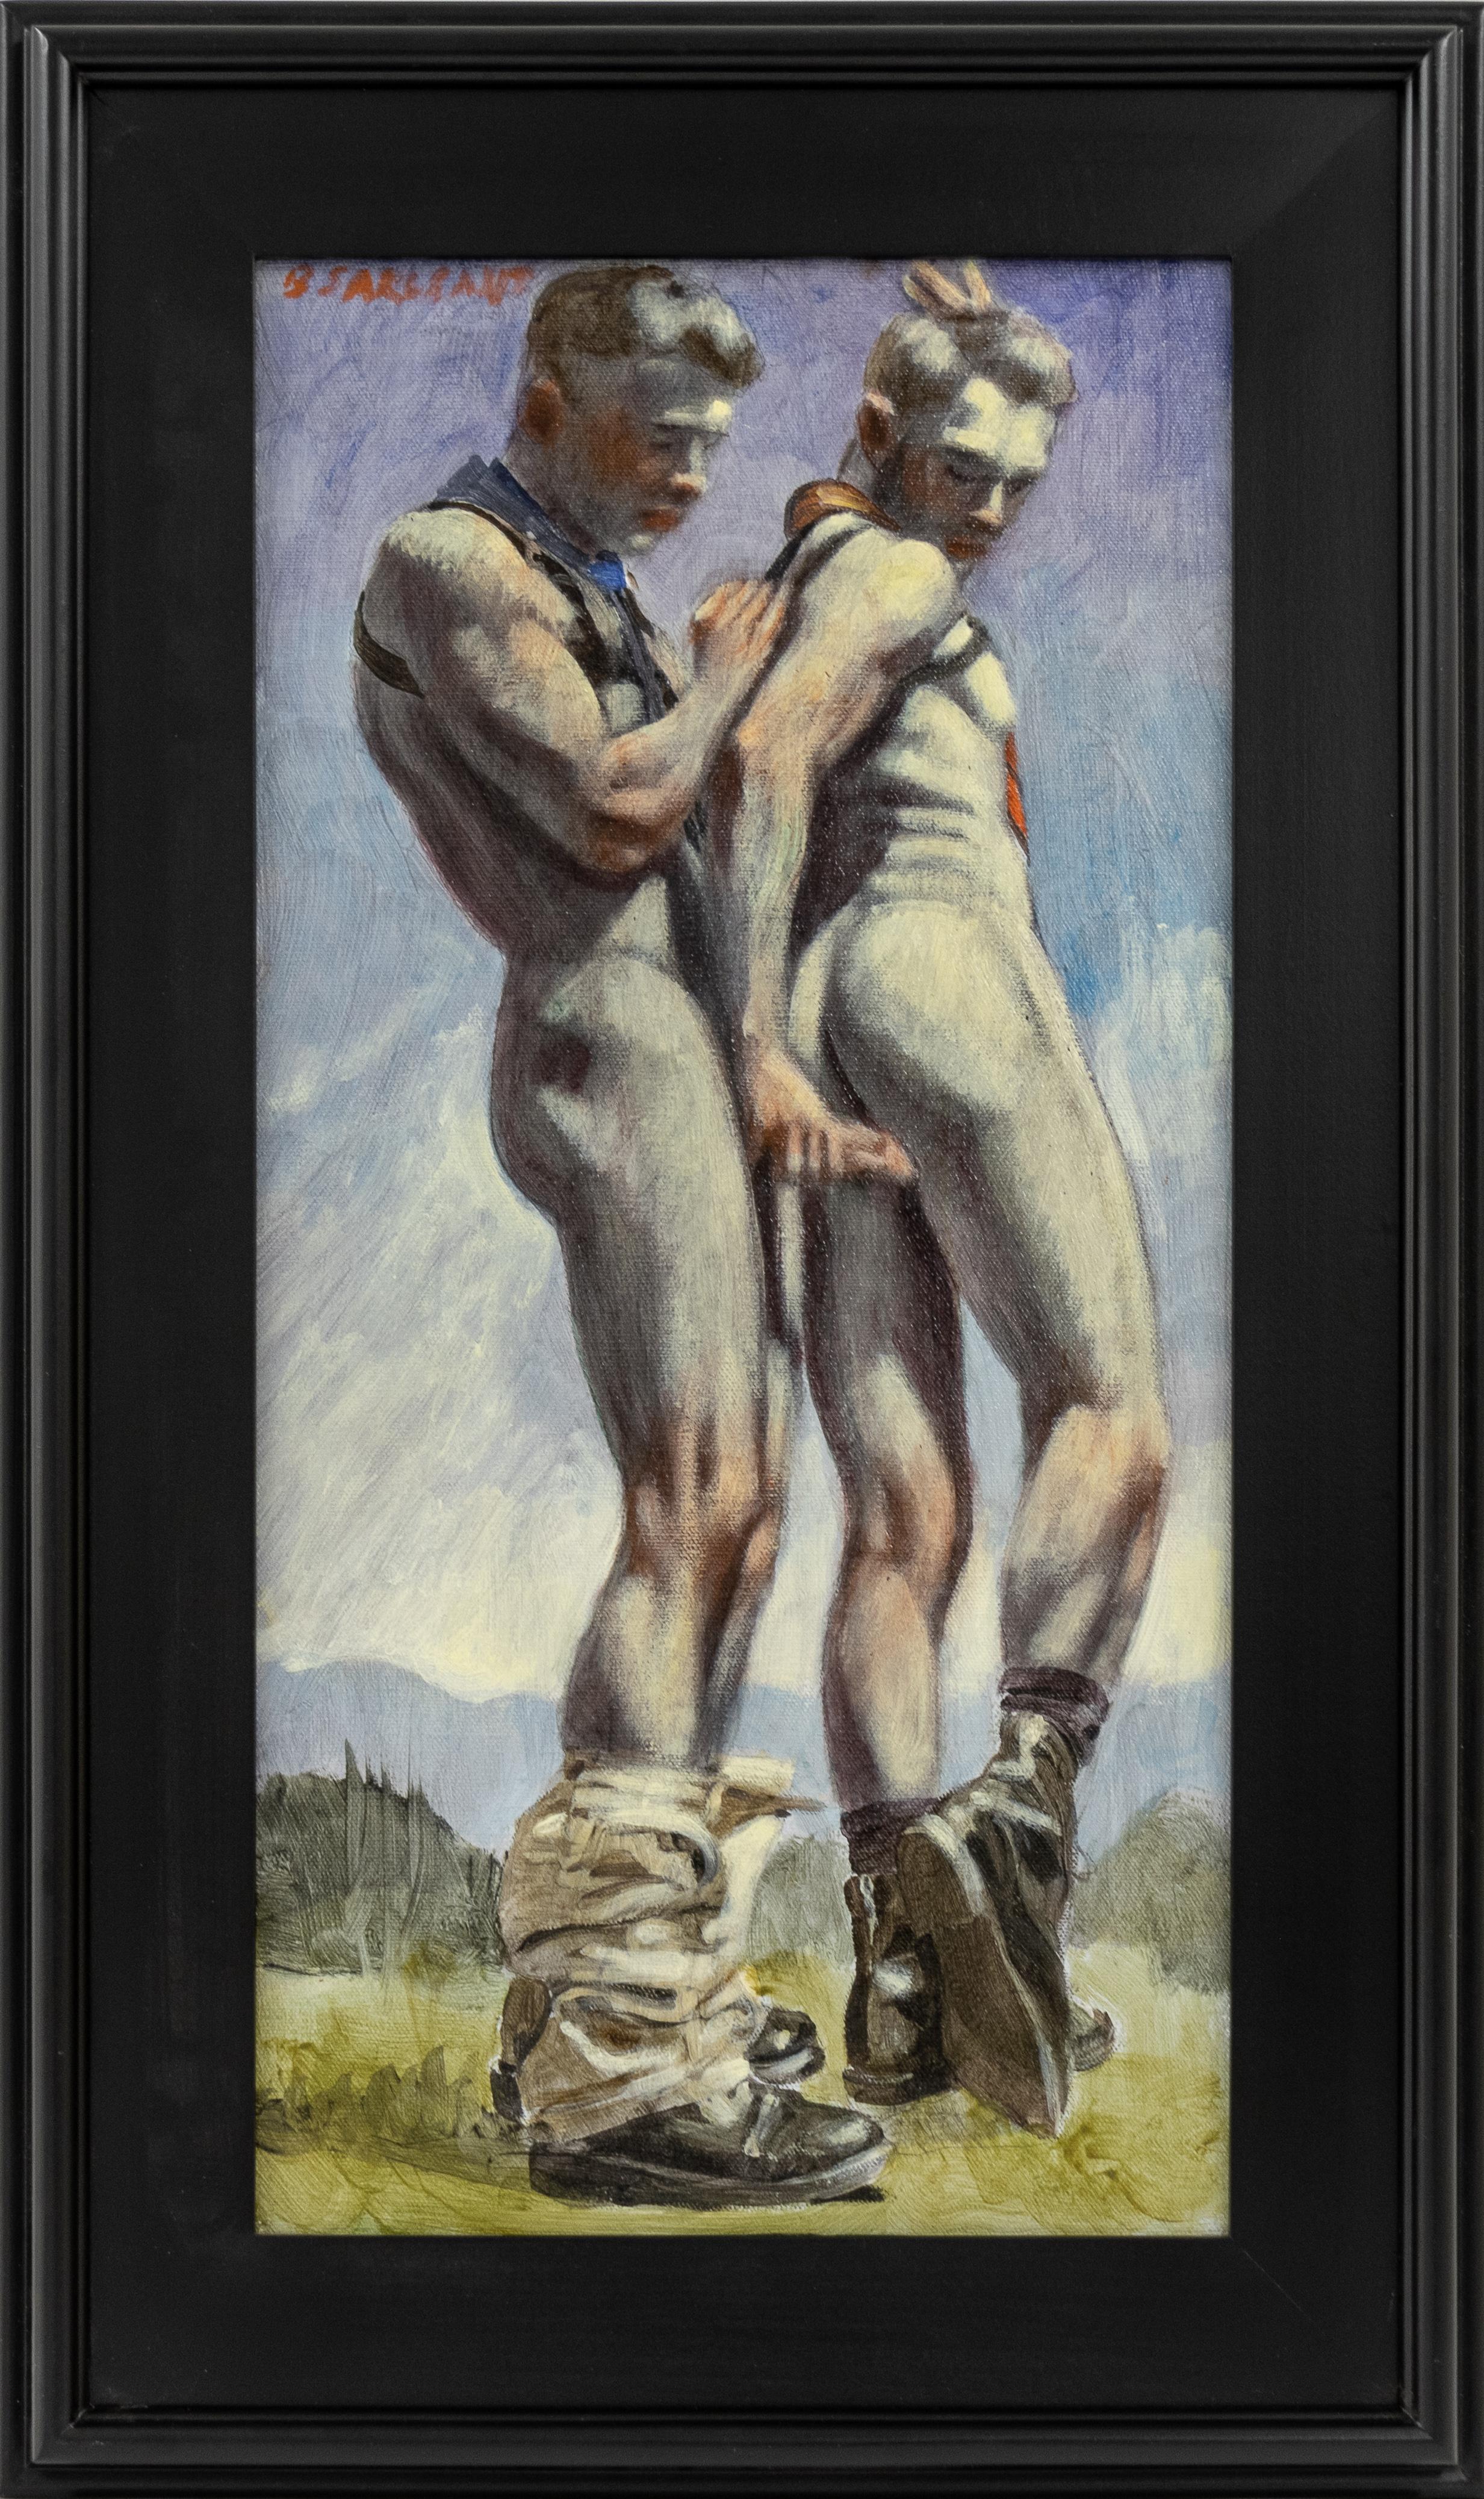 [Bruce Sargeant (1898-1938)] Ein Mann hinter einem anderen – Painting von Mark Beard